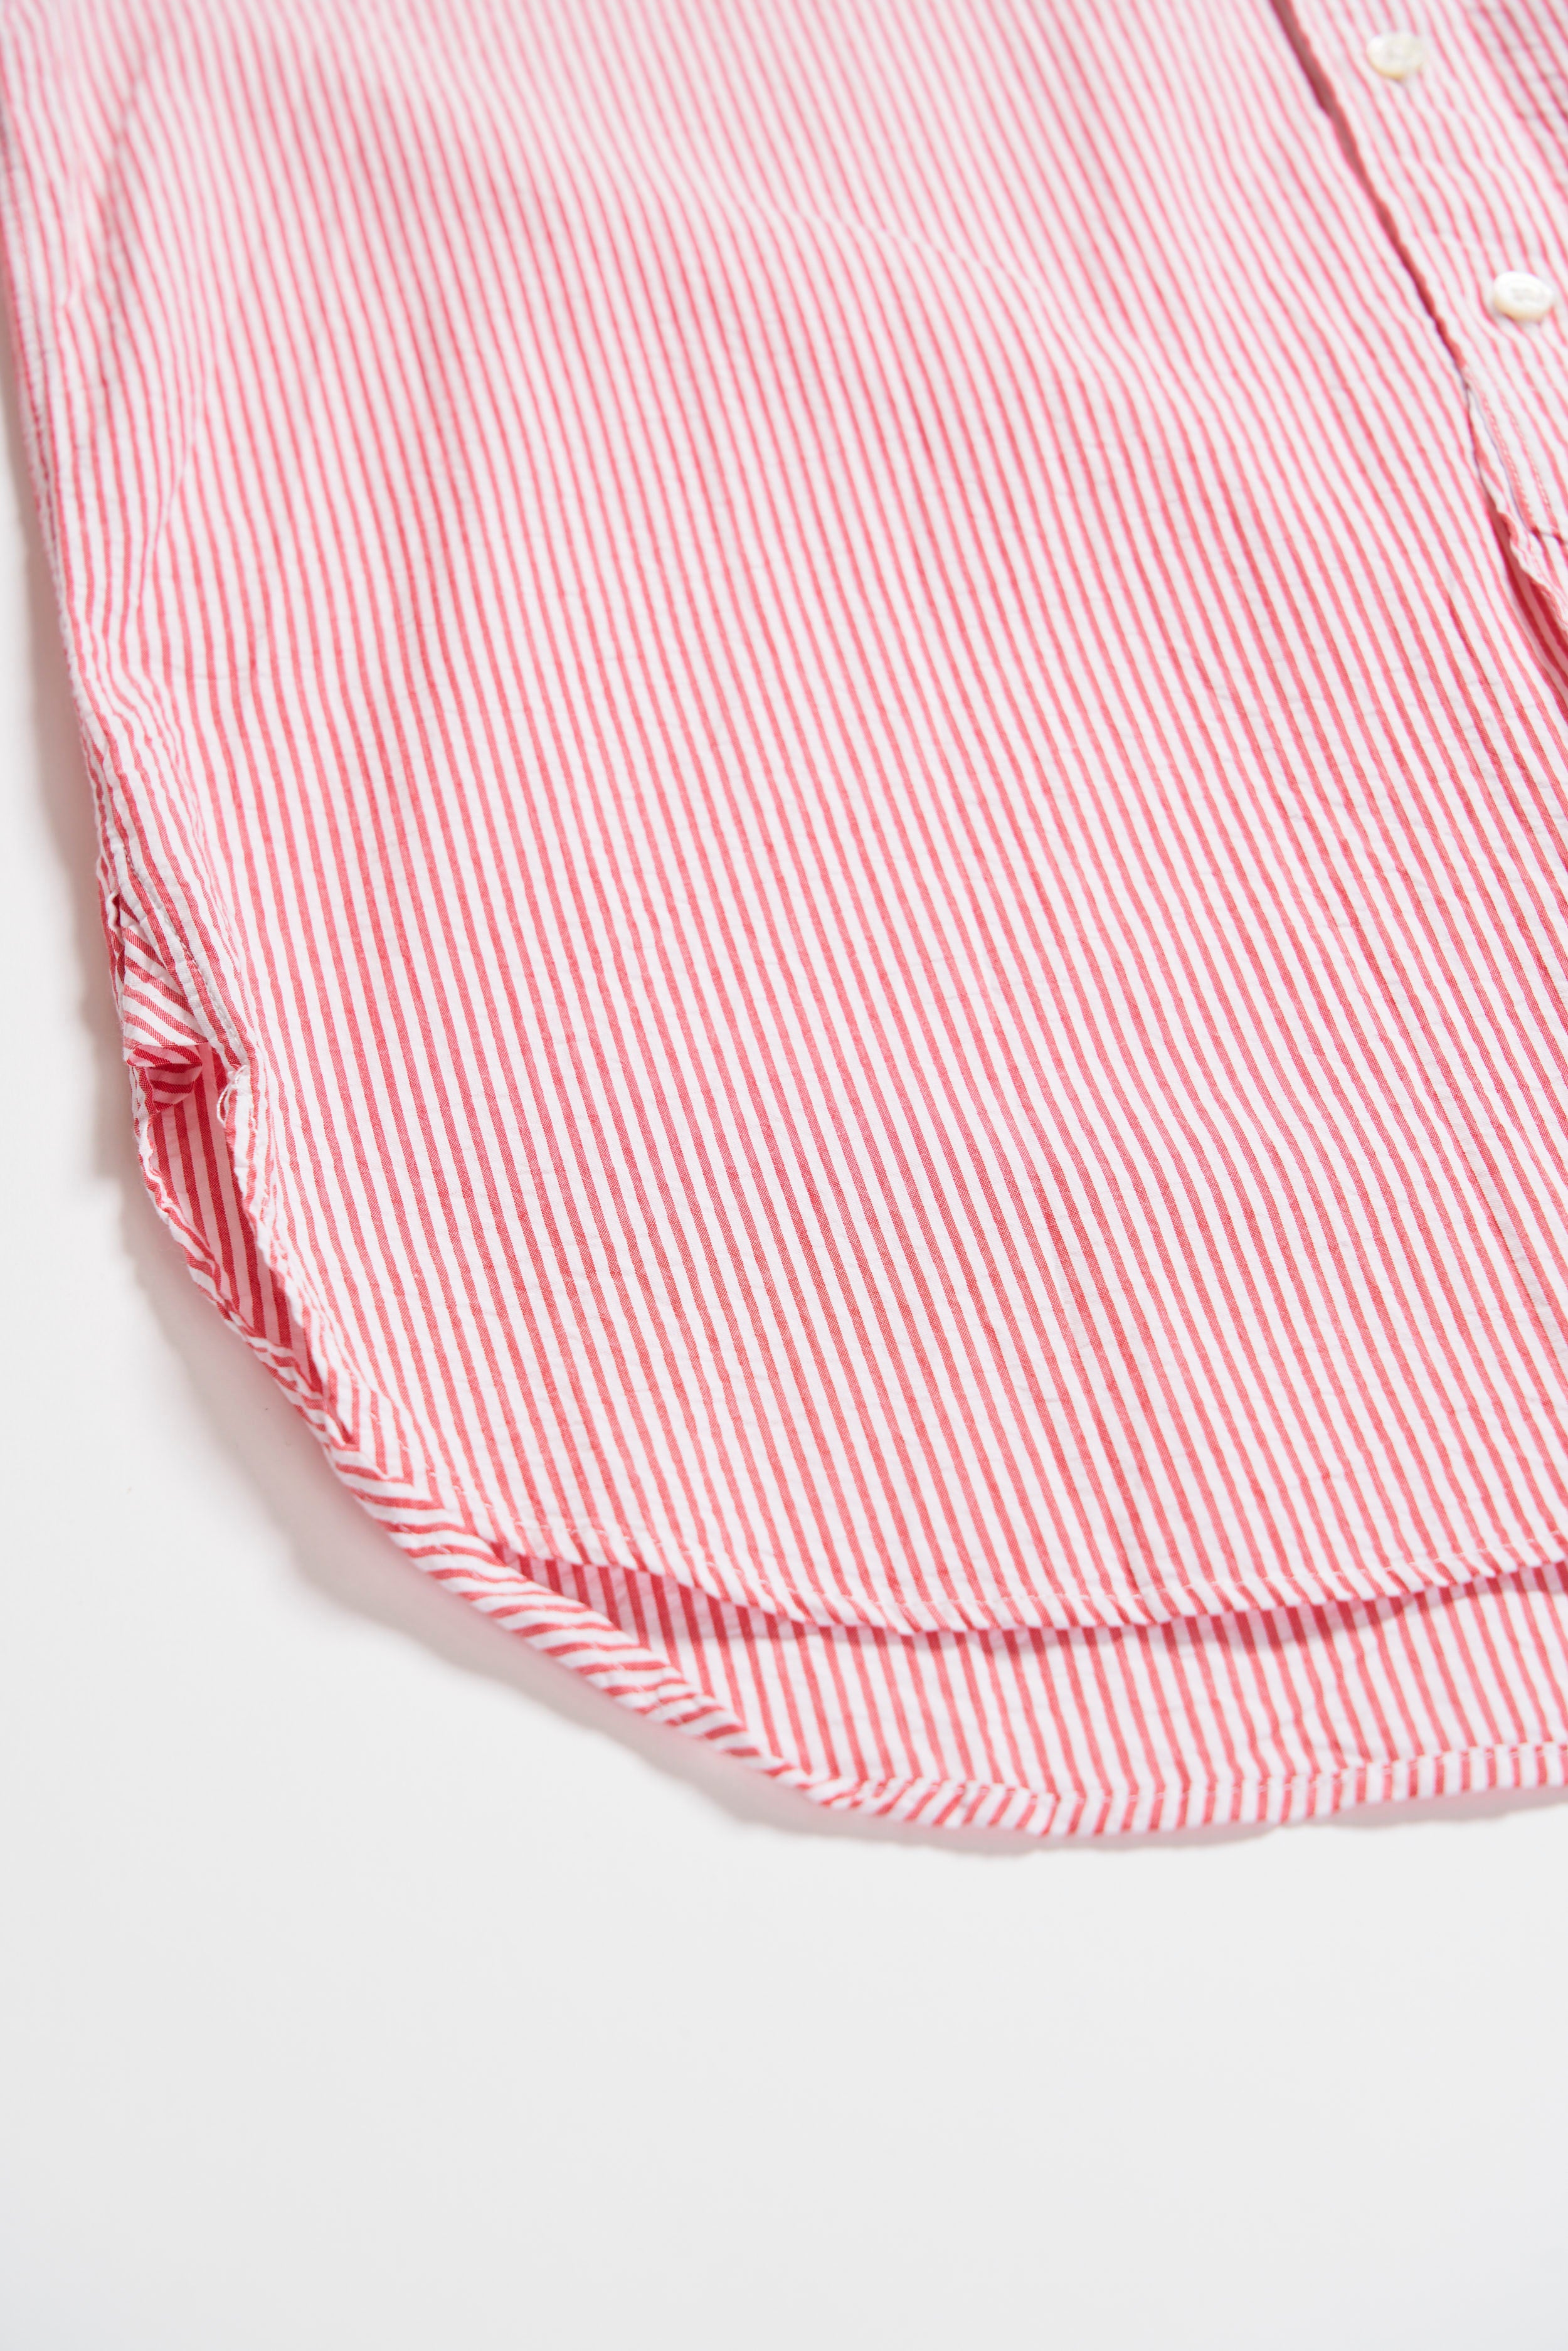 19 Century BD Shirt - Red / White Cotton Seersucker